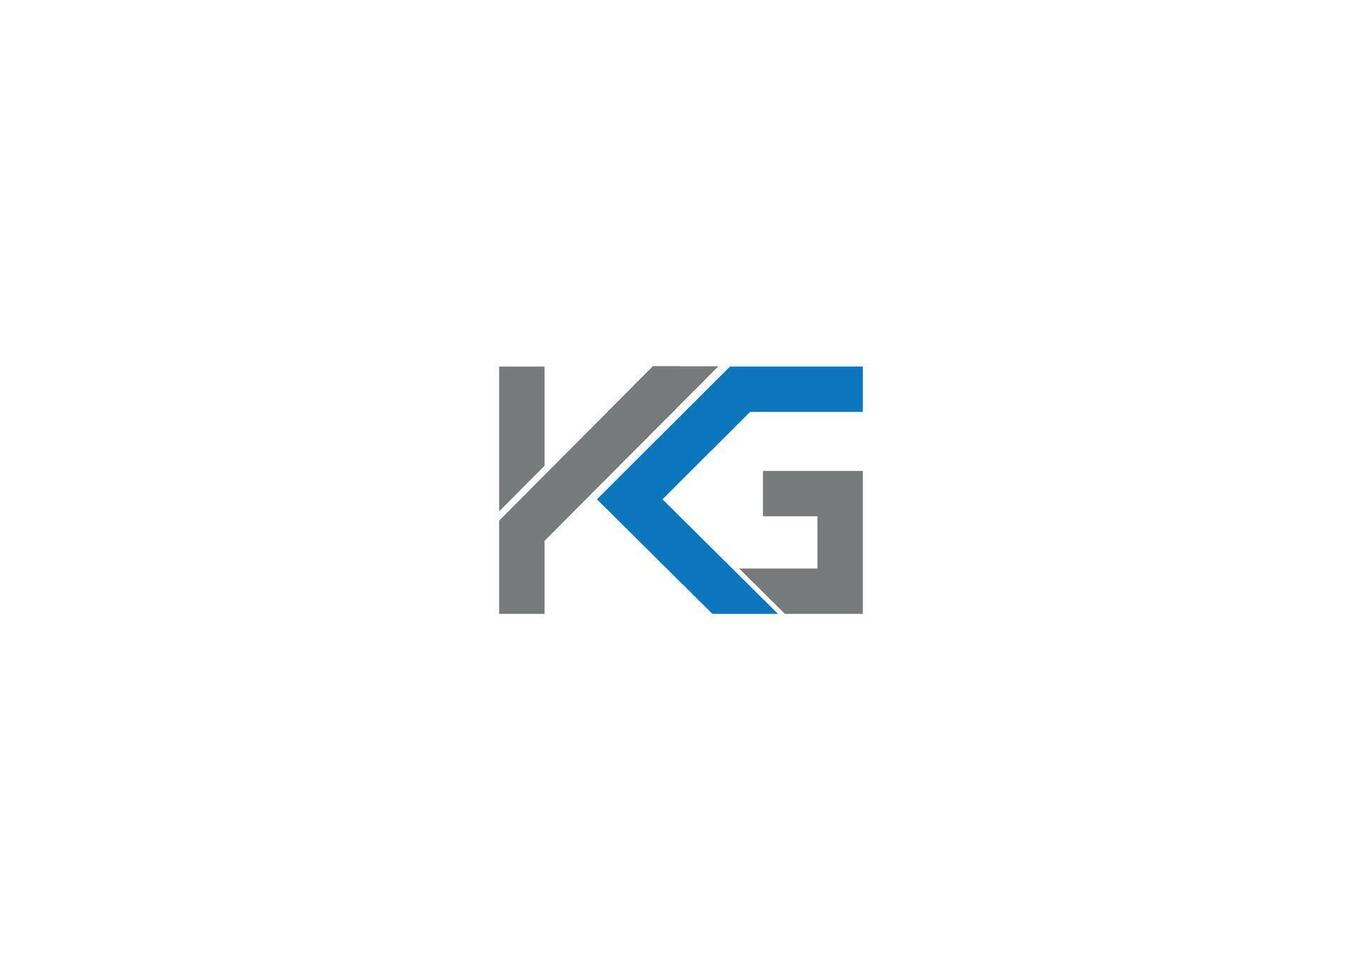 KG creative modern logo design vector icon template